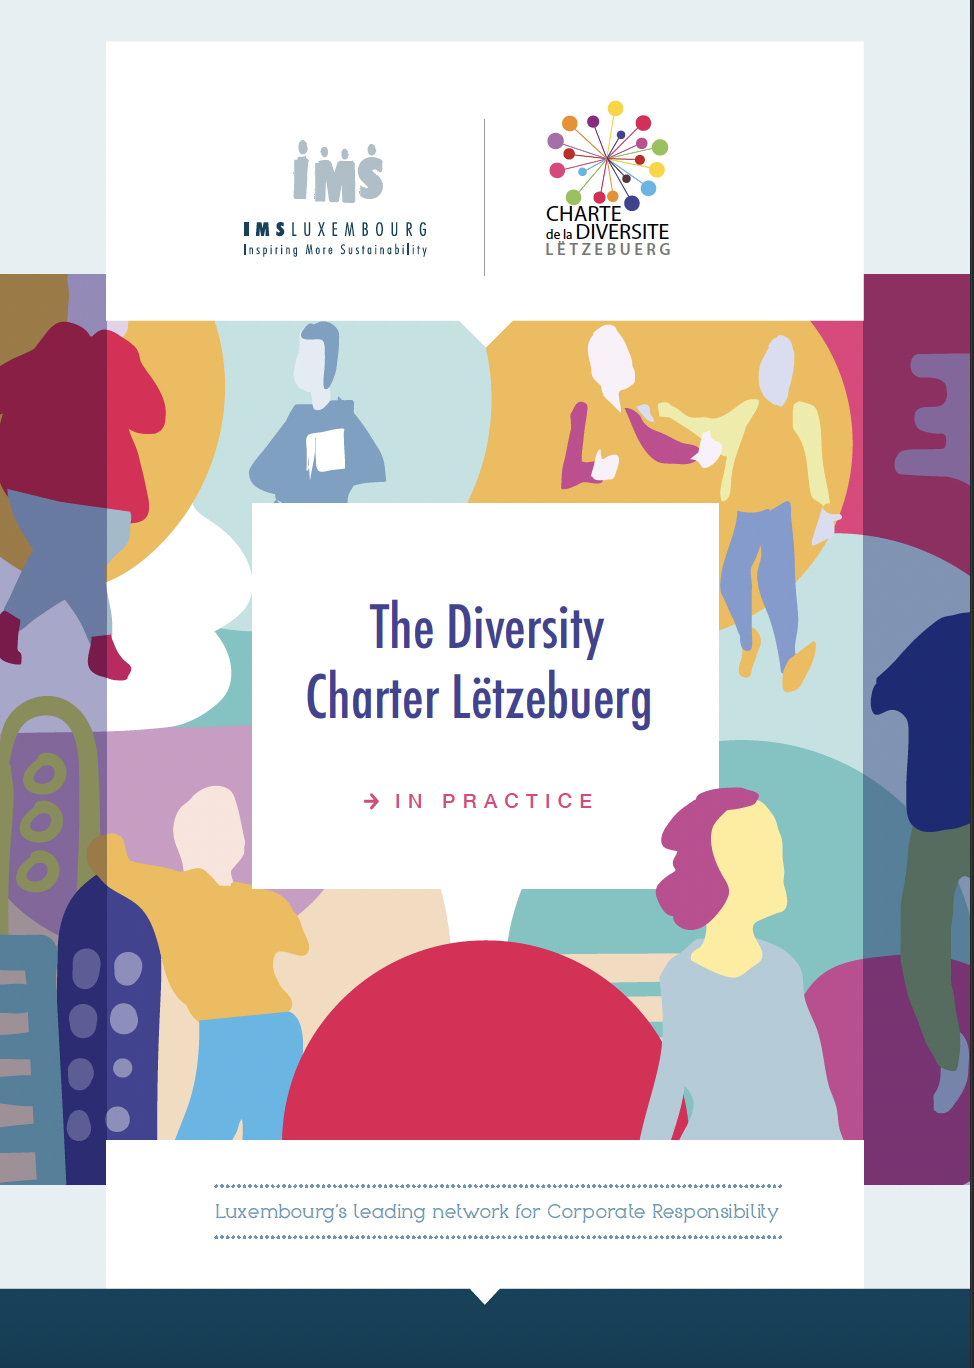 La Charte de la Diversité Lëtzebuerg, en pratique